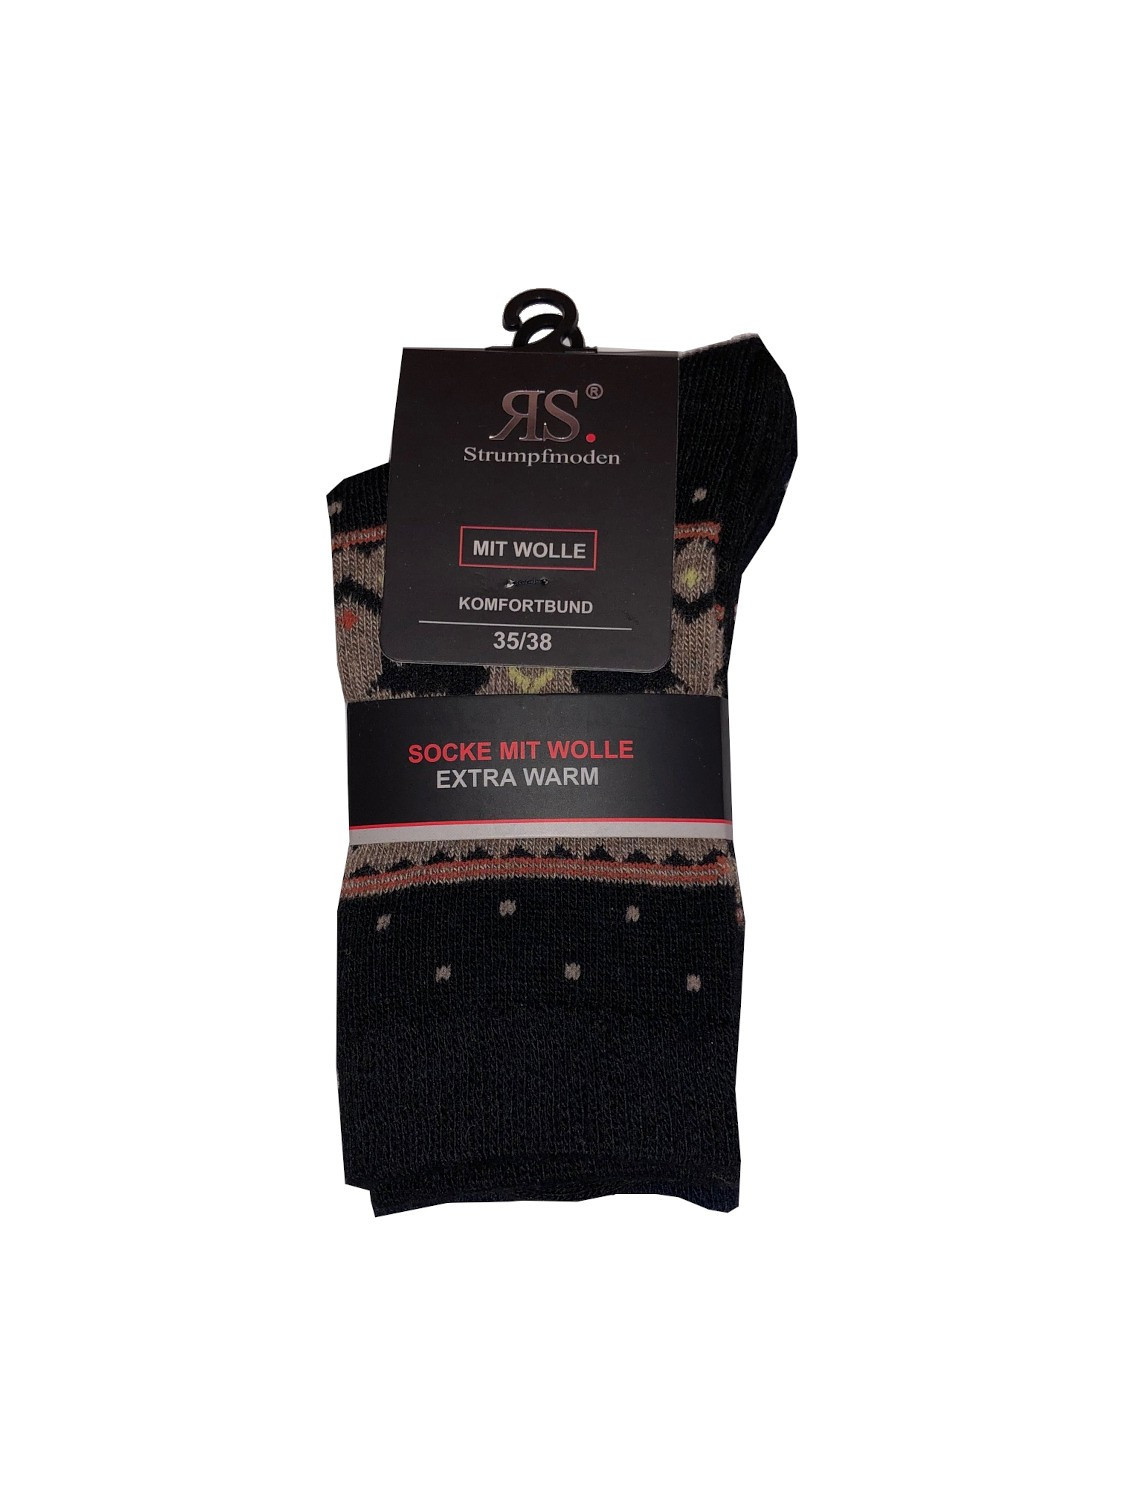 Ponožky RiSocks 43356 Mit Wolle Komfortbund vzor 35-46 A'2 námořnická modř-černá 39-42